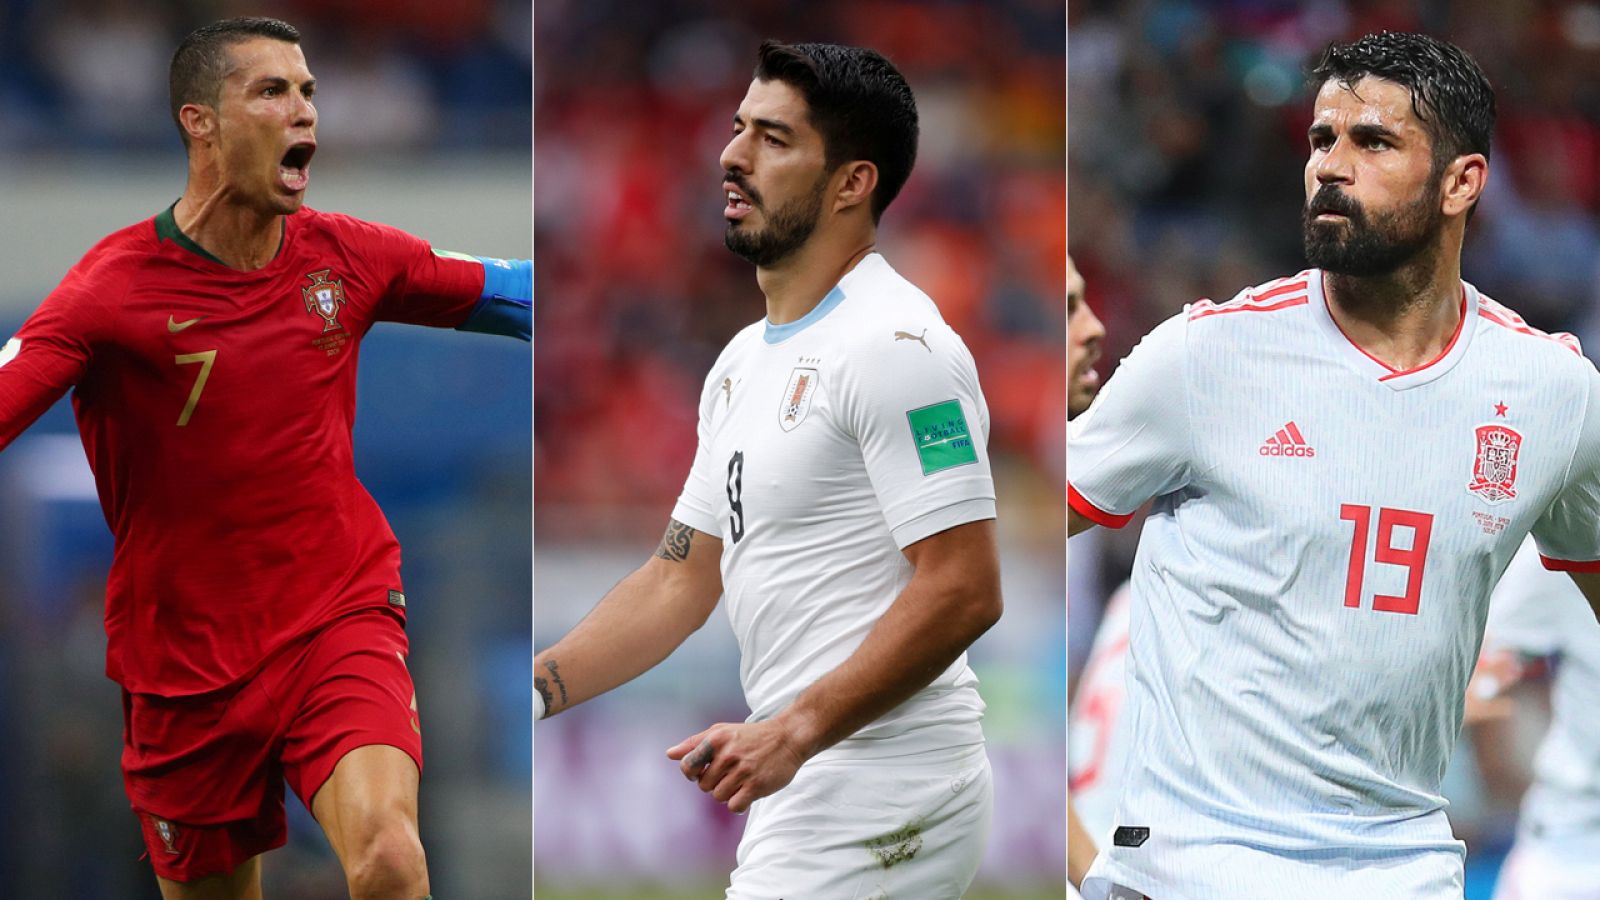 La segunda jornada del grupo de España y el Uruguay-Arabia del Mundial, en vivo este miércoles en RTVE.es